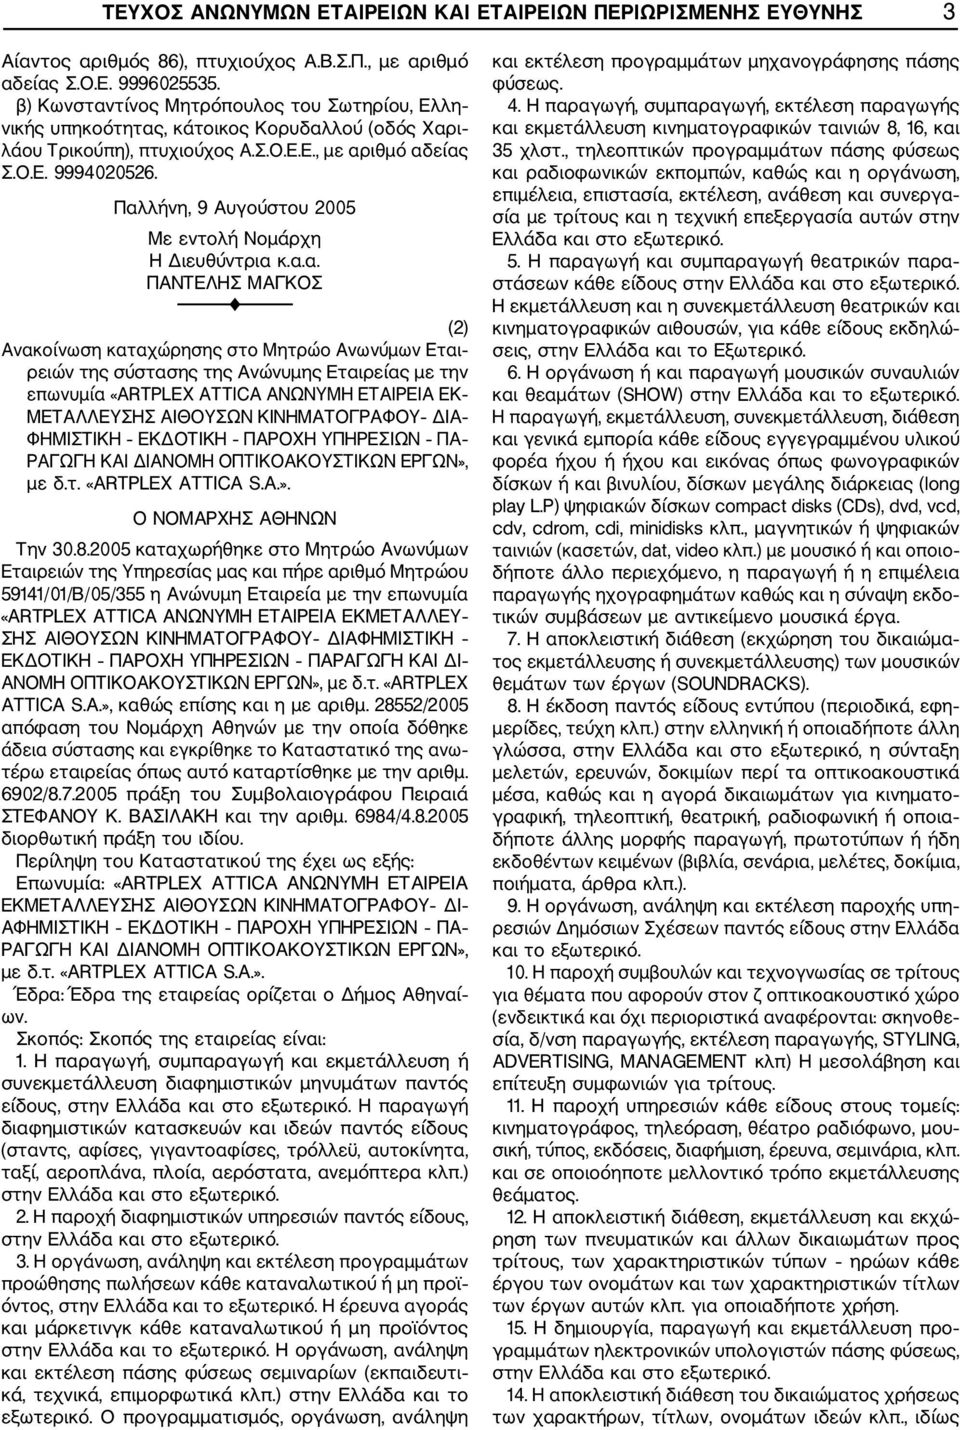 Παλλήνη, 9 Αυγούστου 2005 Η Διευθύντρια κ.α.α. ΠΑΝΤΕΛΗΣ ΜΑΓΚΟΣ (2) Εται ρειών της σύστασης της Ανώνυμης Εταιρείας με την επωνυμία «ARTPLEX ATTICA ΑΝΩΝΥΜΗ ΕΤΑΙΡΕΙΑ ΕΚ ΜΕΤΑΛΛΕΥΣΗΣ ΑΙΘΟΥΣΩΝ